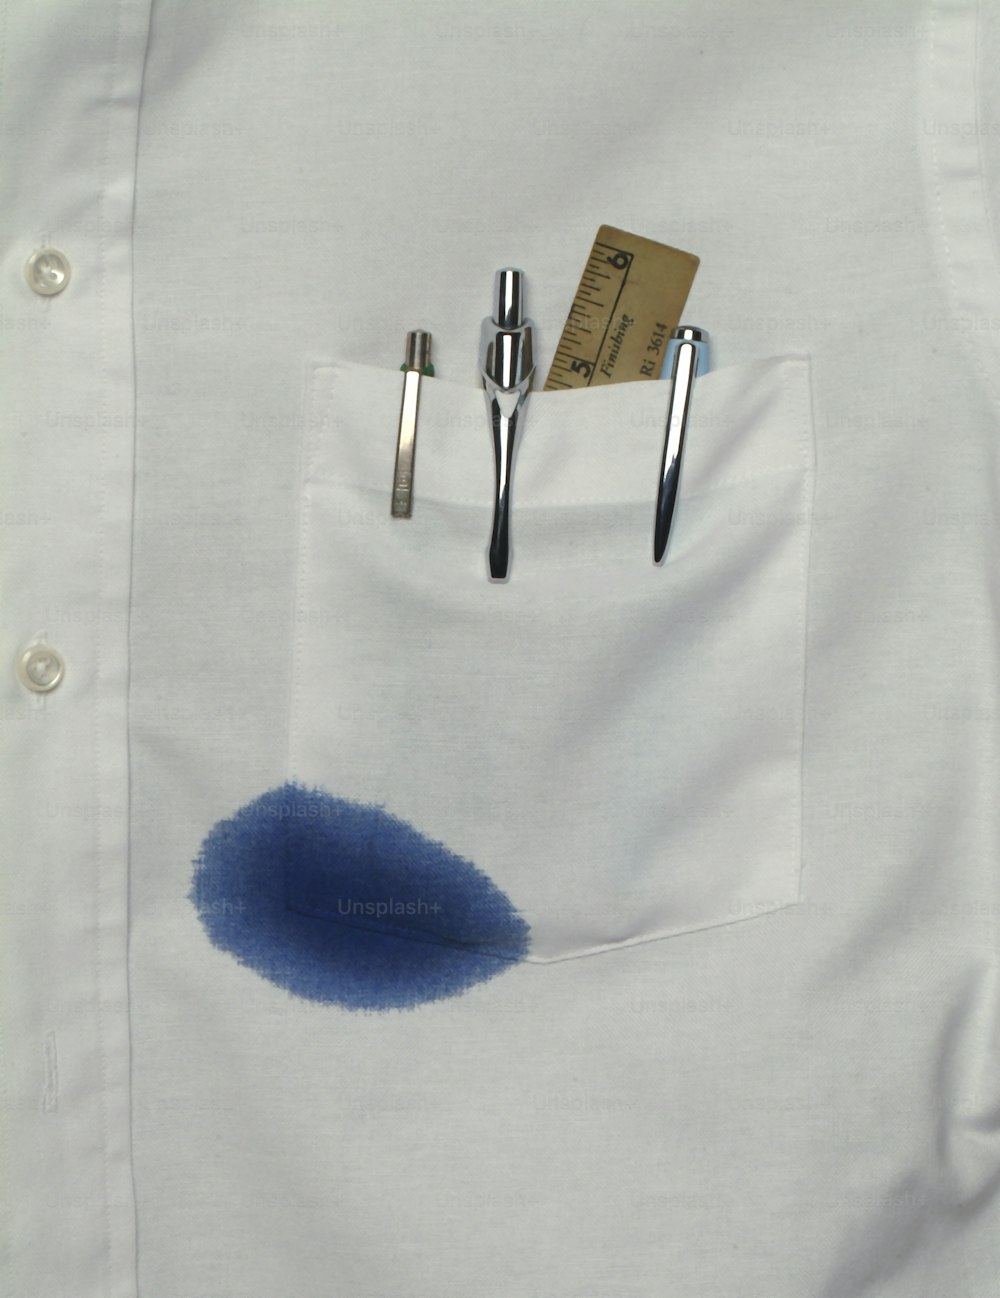 Vista de cerca de un bolsillo de camisa que contiene una regla y varios bolígrafos, uno de los cuales gotea tinta azul, California, década de 1970. (Foto de Tom Kelley/Getty Images)